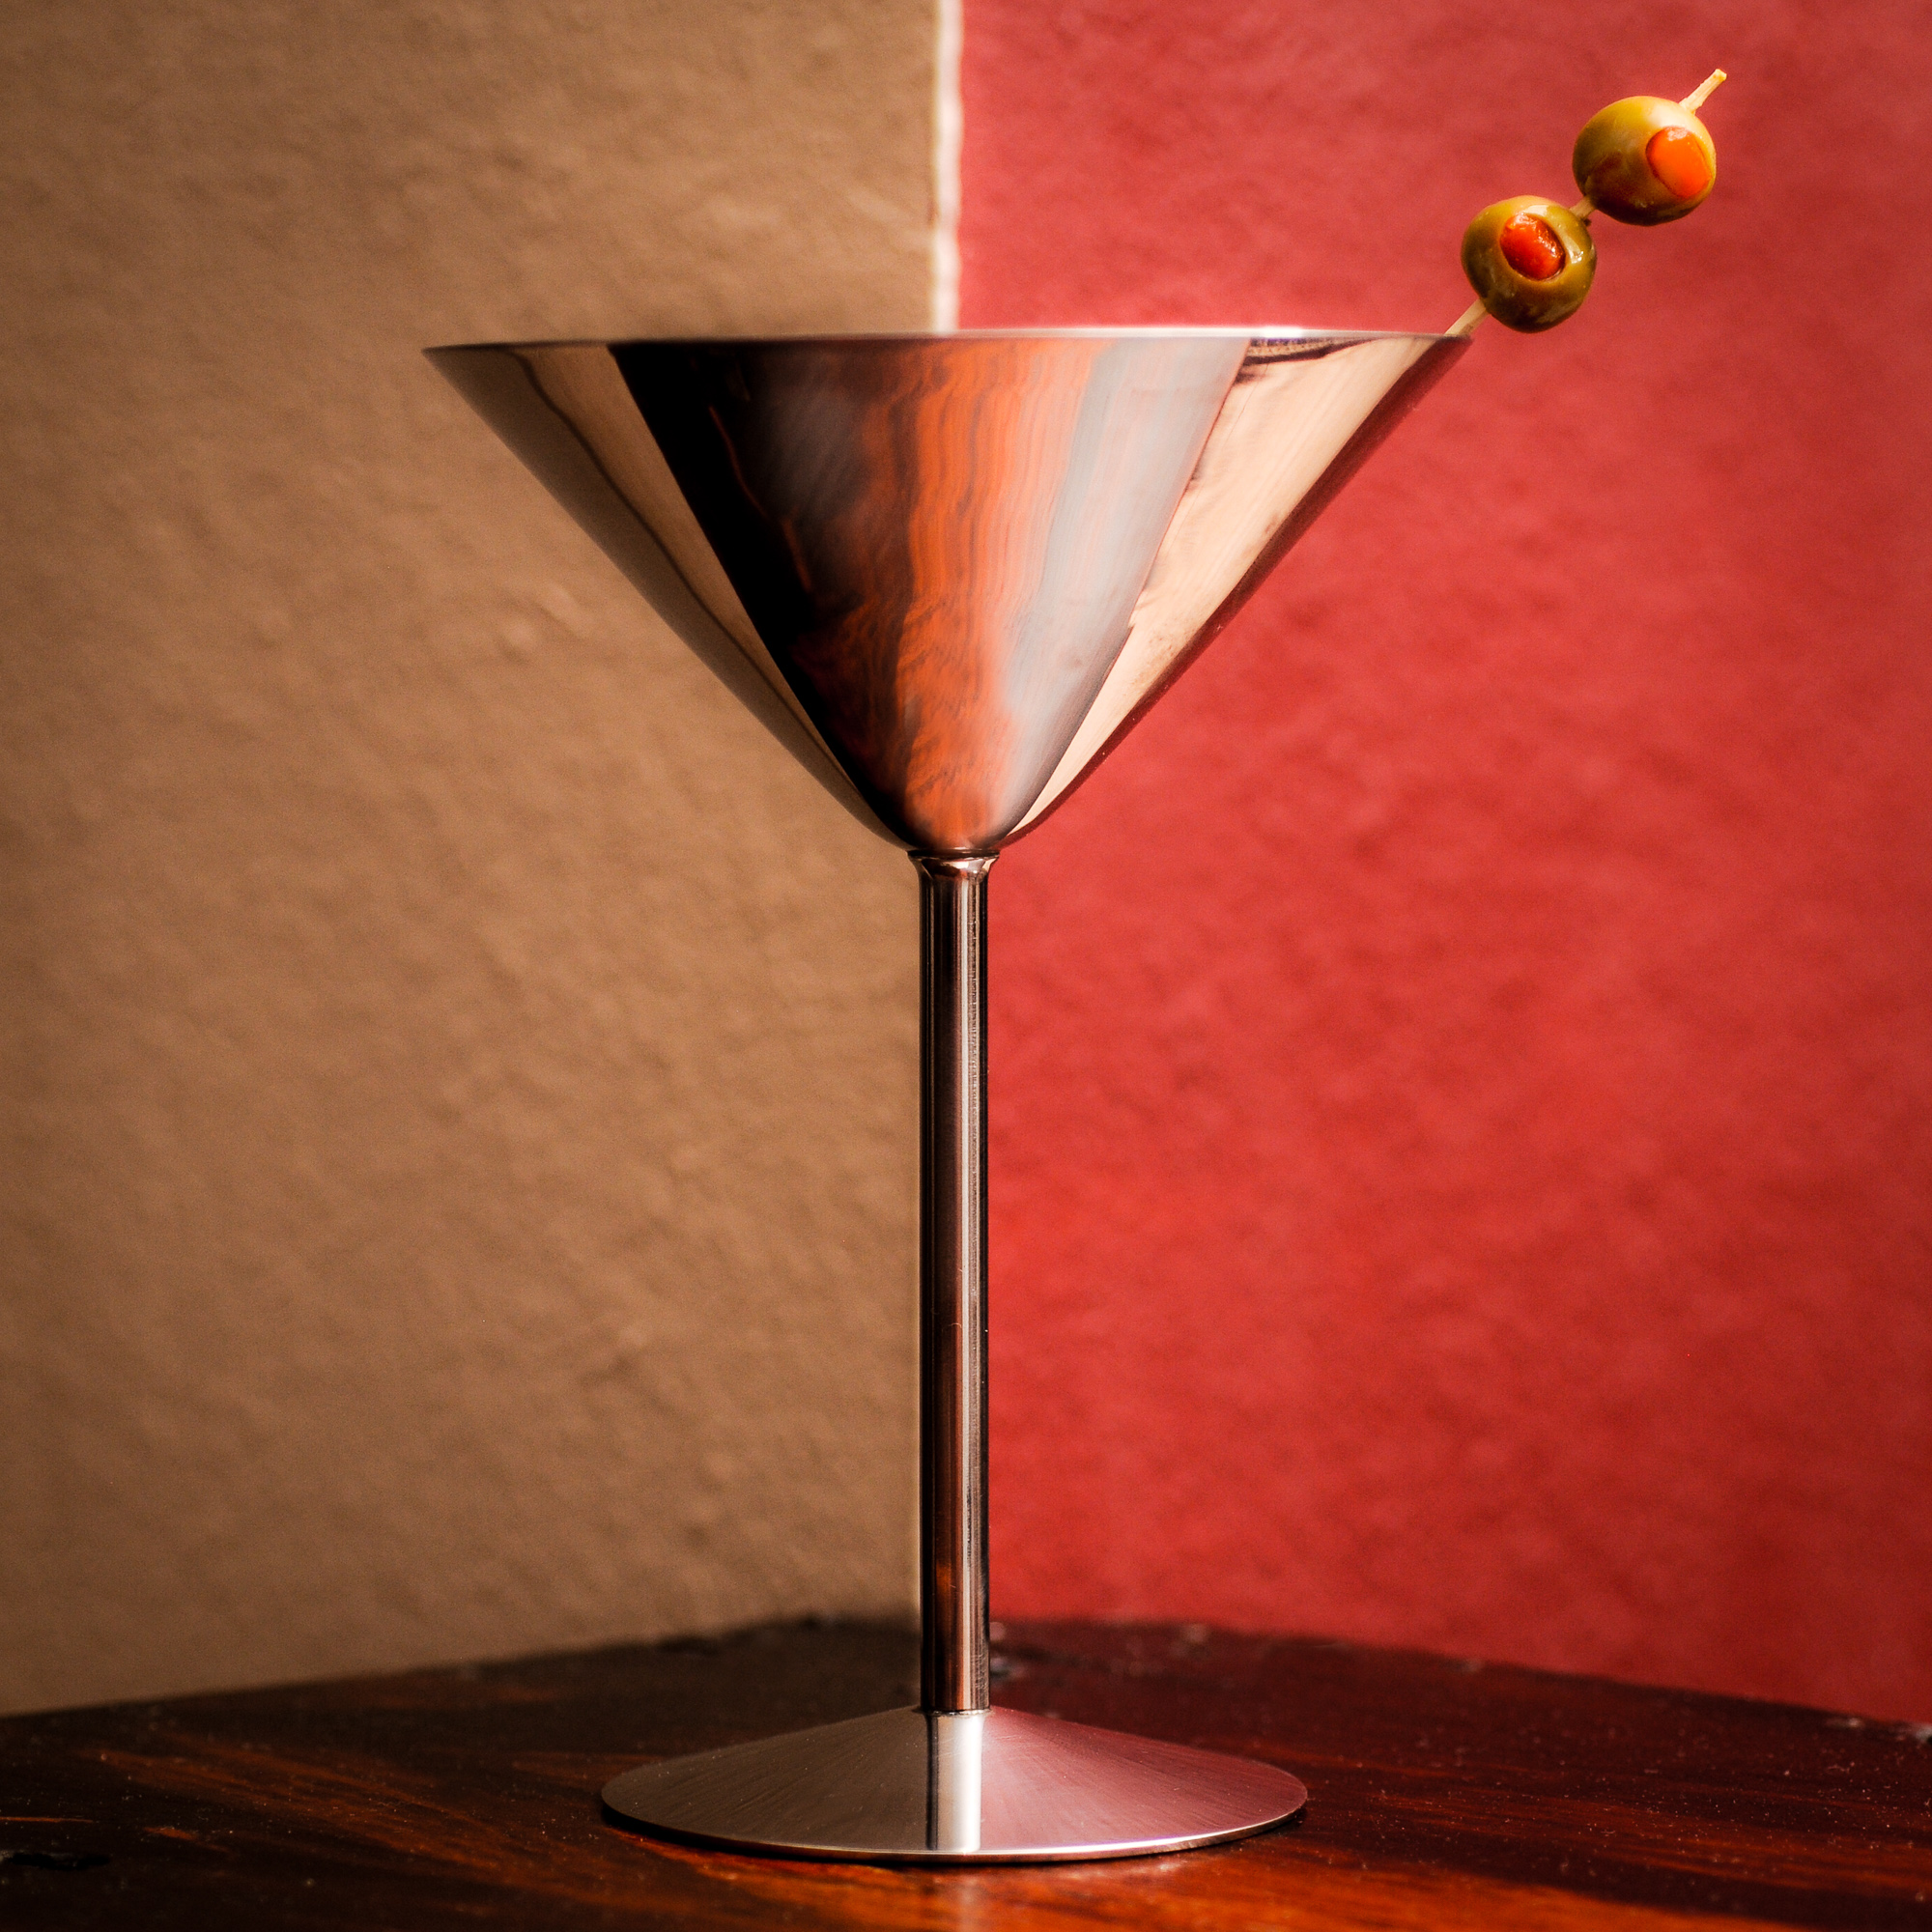 gin-martini-new-mexico-clarke-conde.jpg